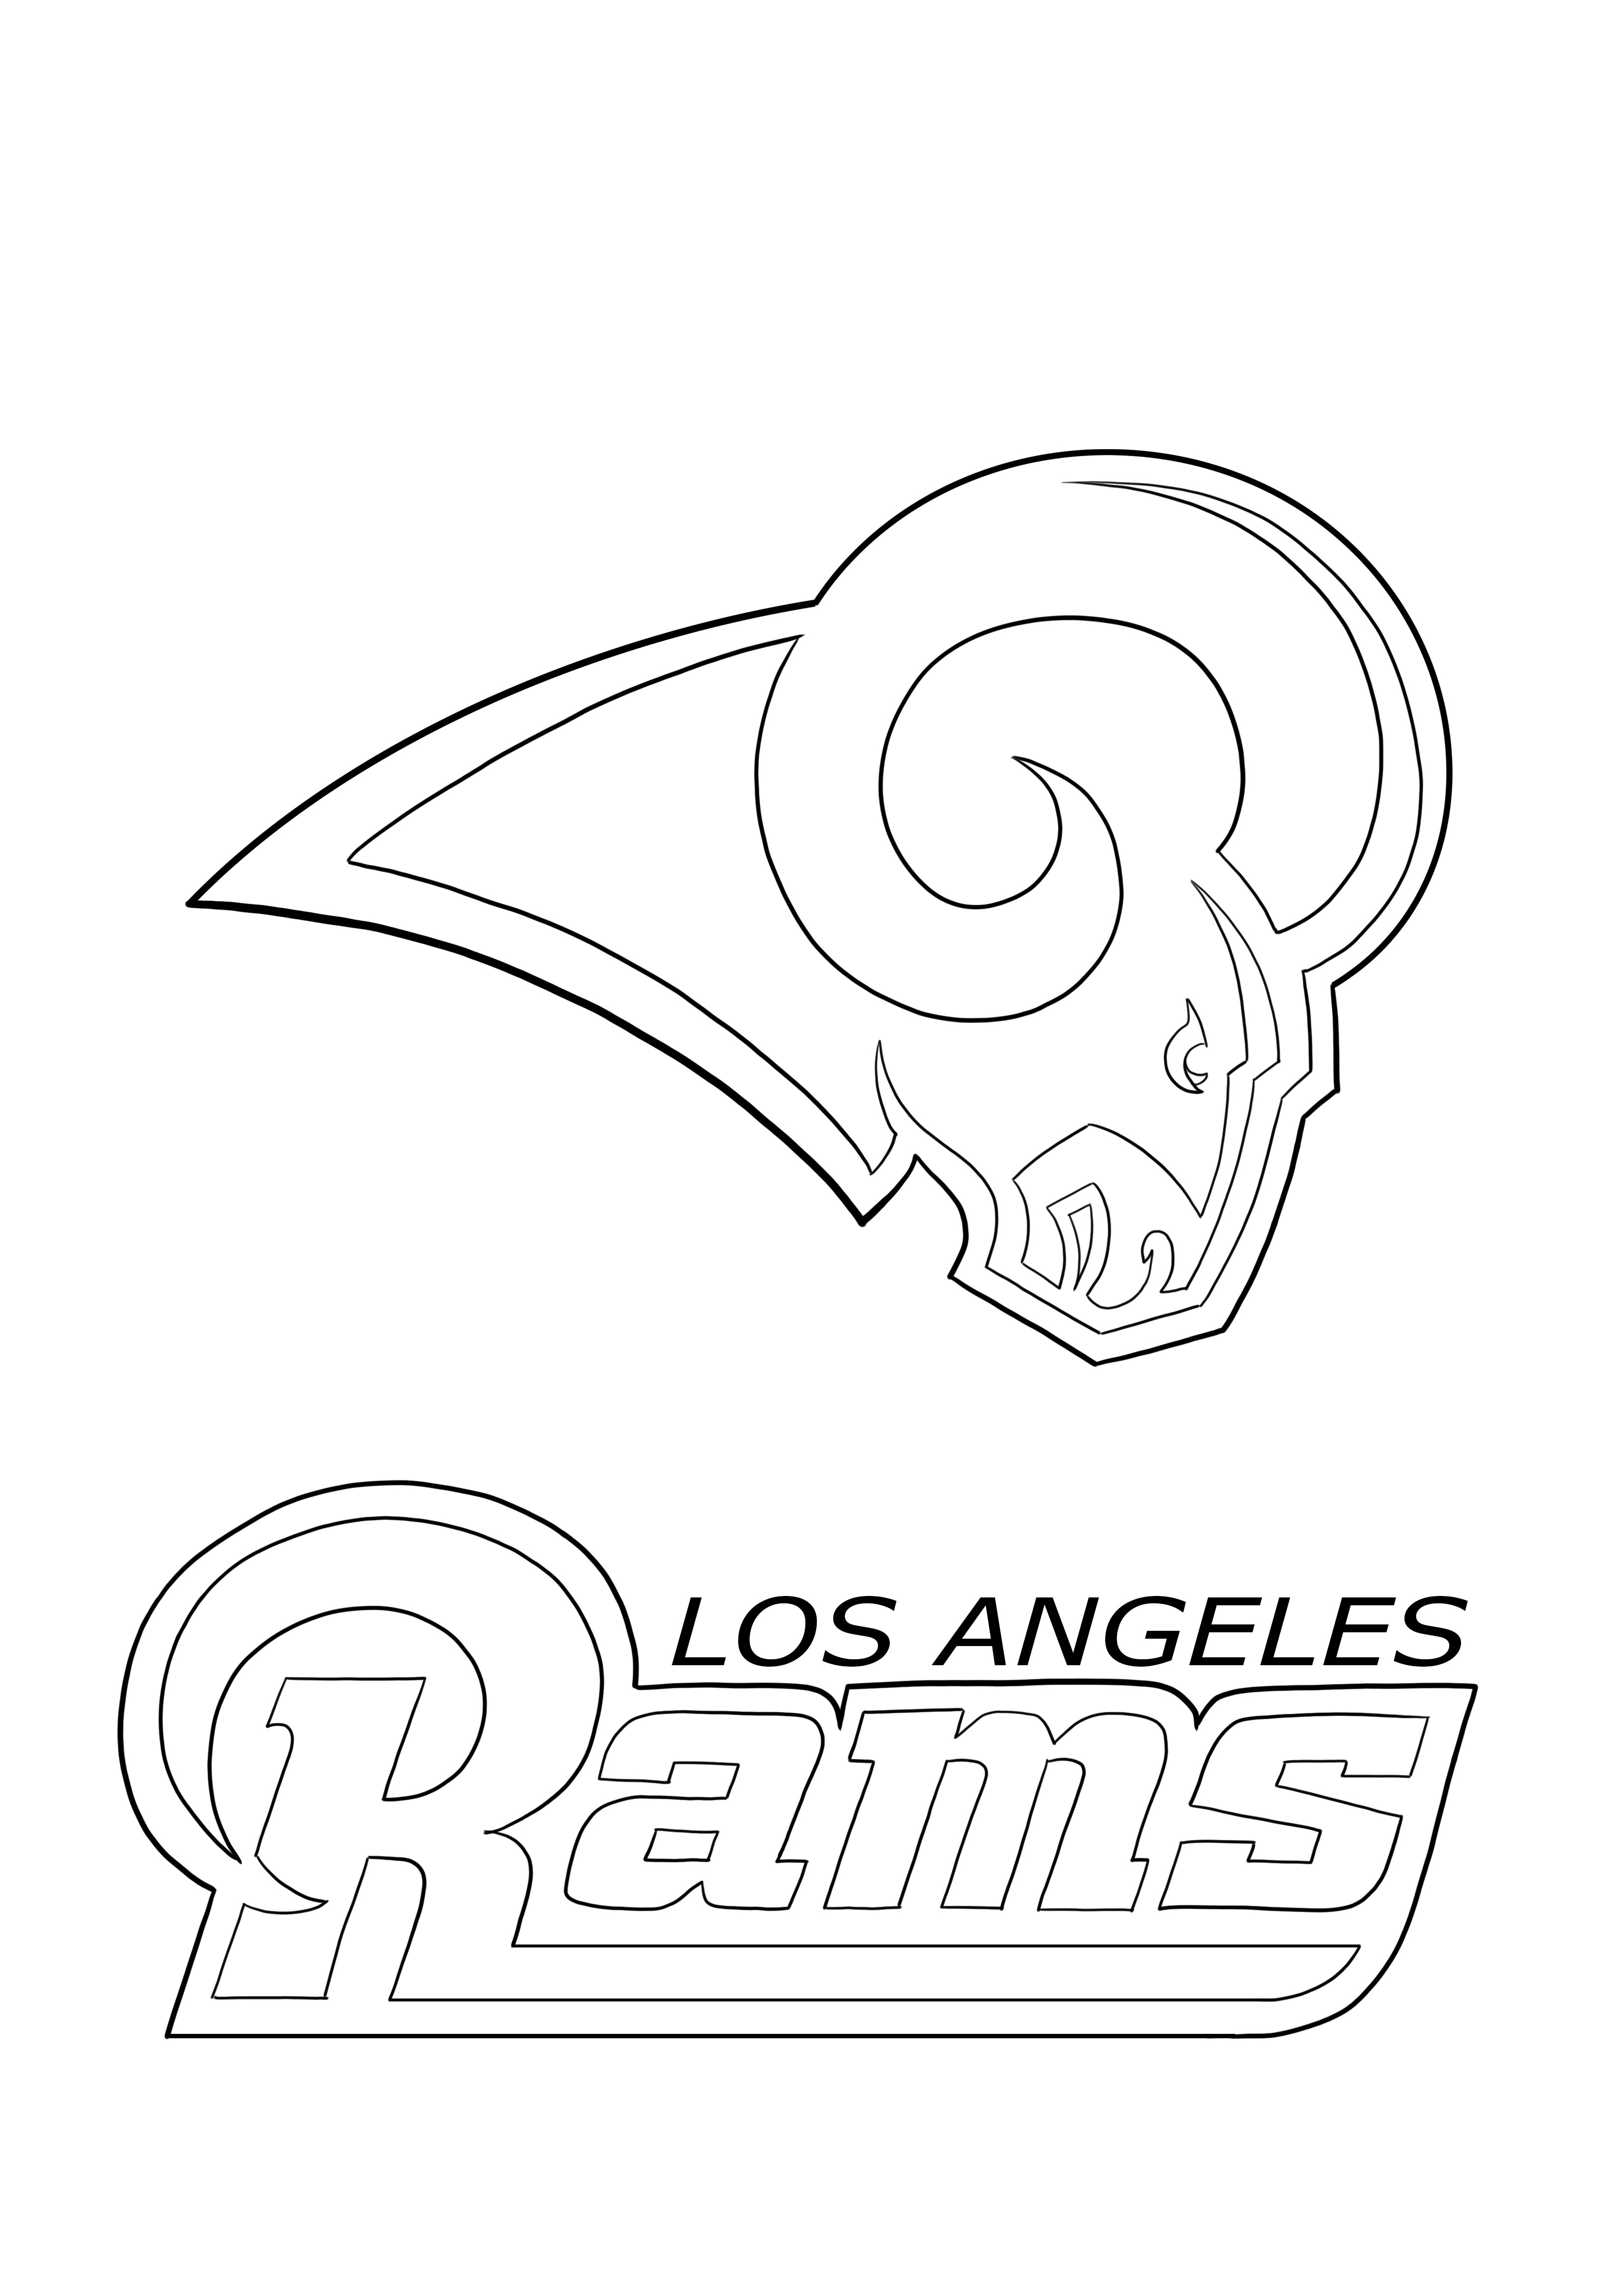 Coloriage et téléchargement gratuit des Rams de Los Angeles